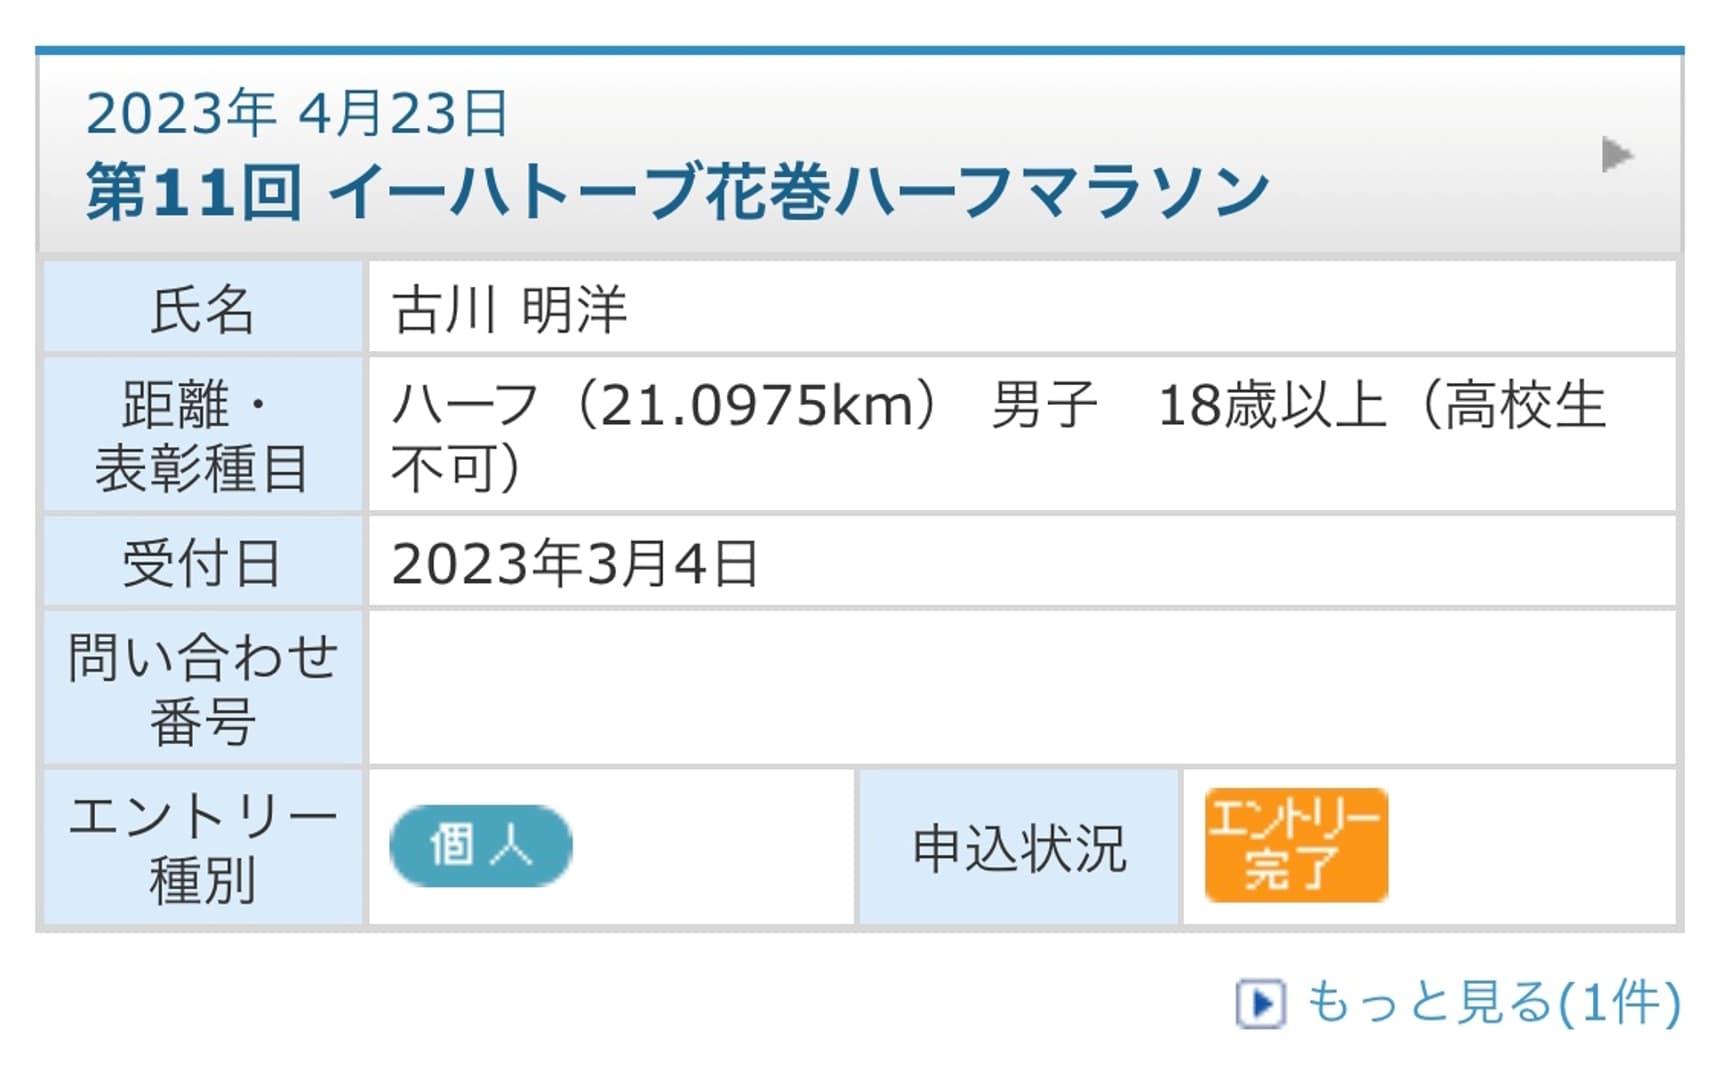 half marathon-hanamaki-entry-furukawa.jpg